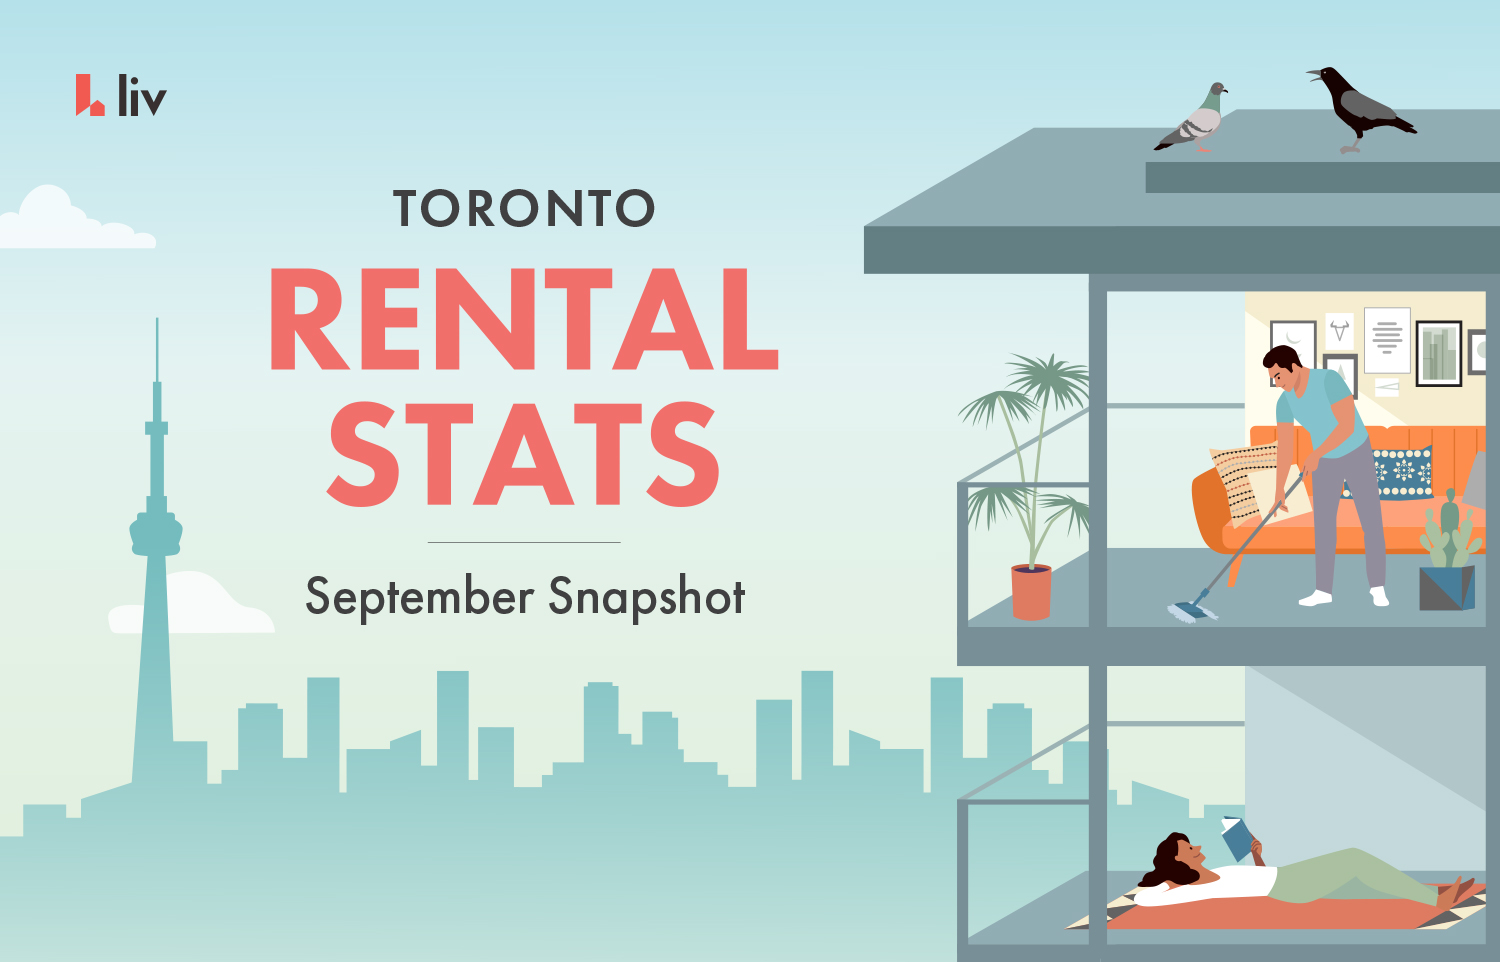 Toronto Rental Stats – September 2019 Snapshot